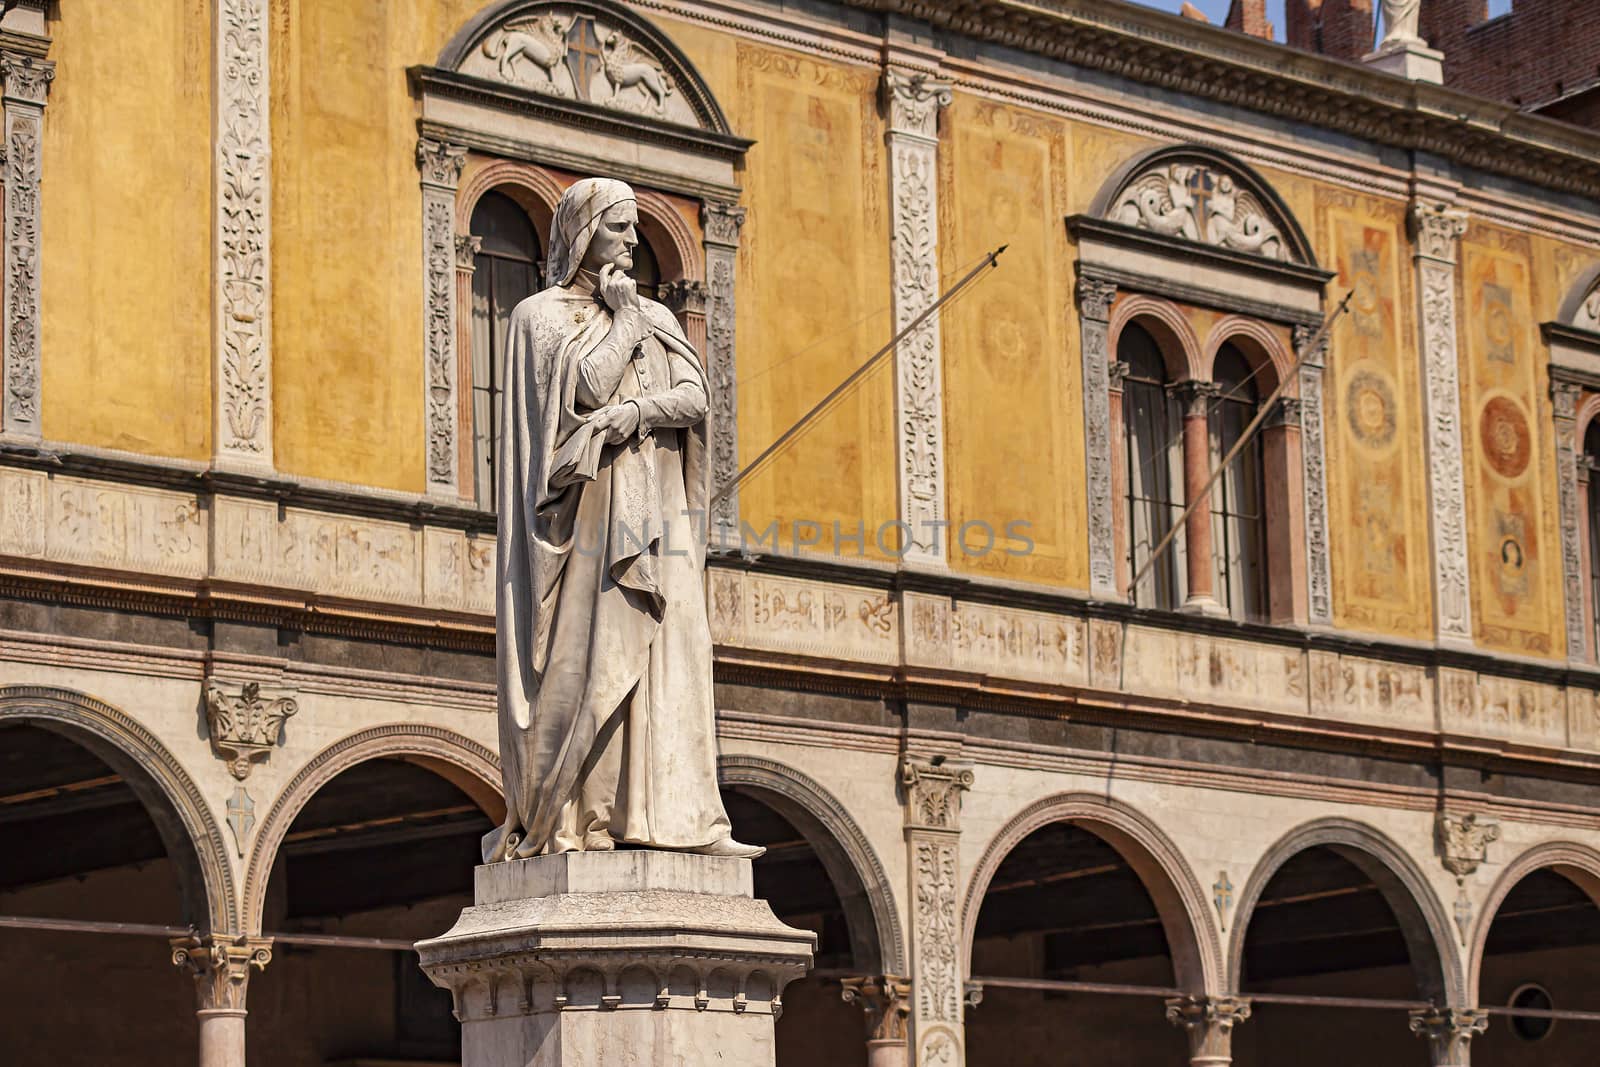 Verona's Dante statue by pippocarlot